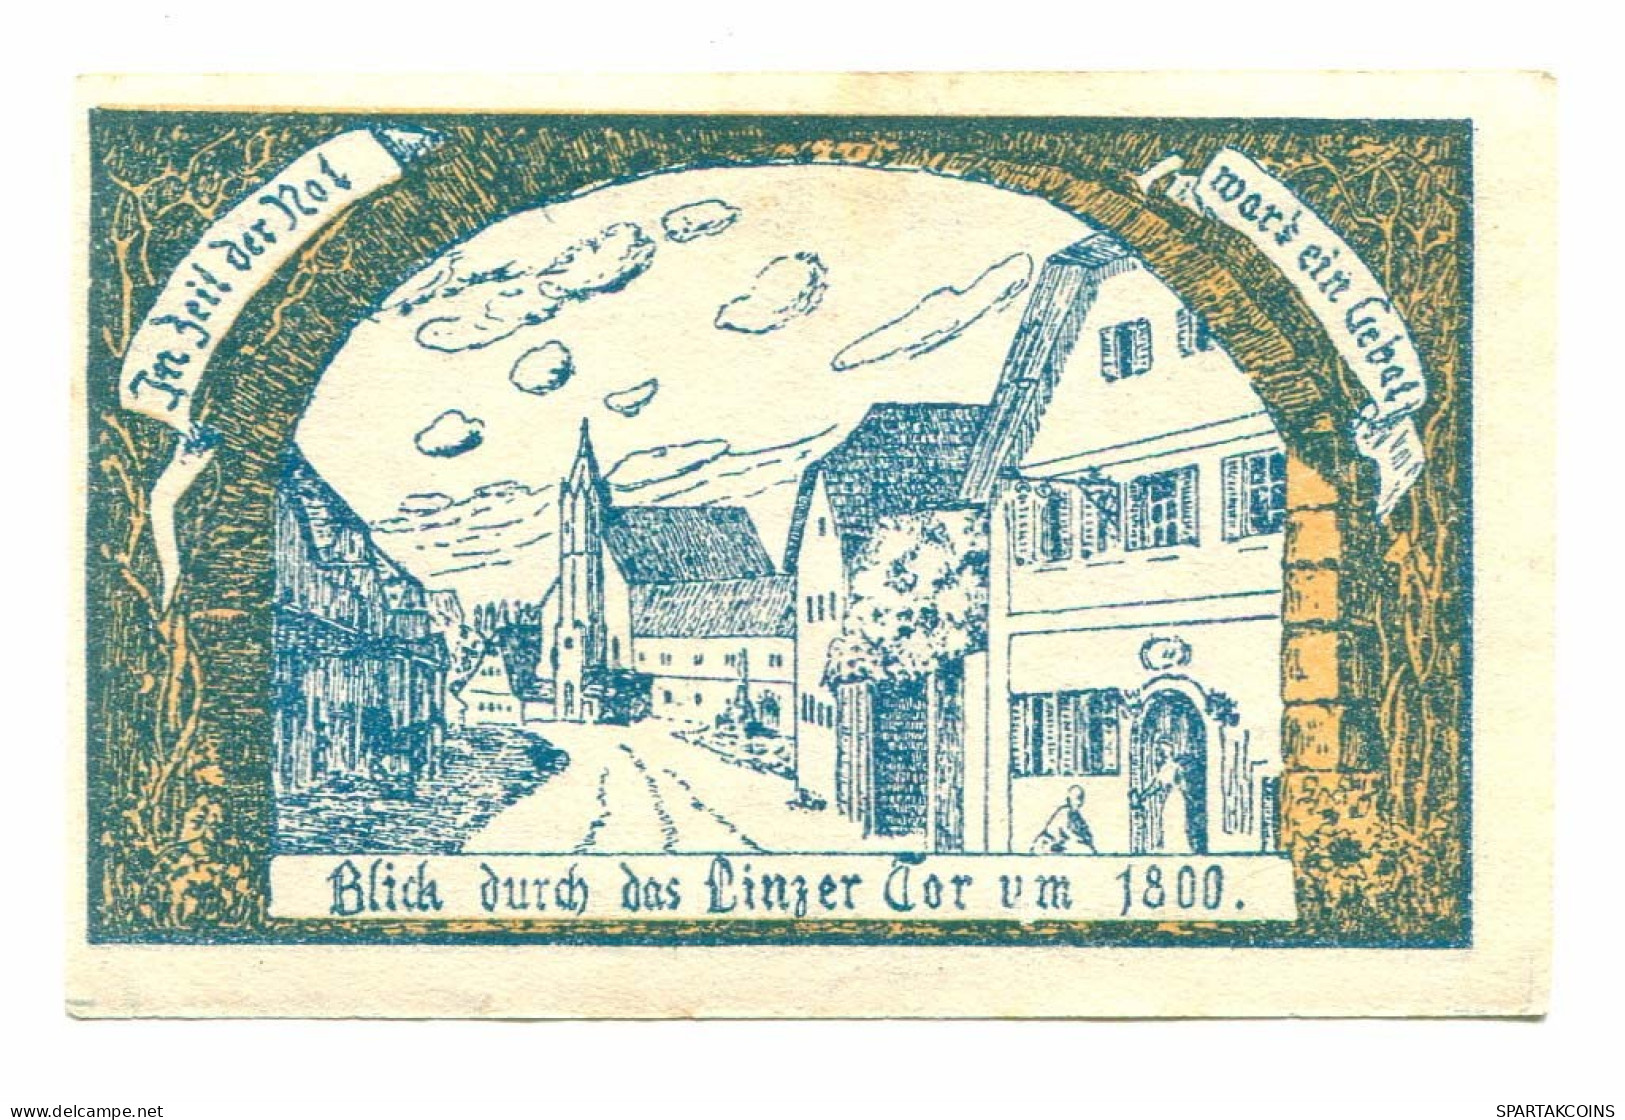 10 Heller 1920 EFERDING Österreich UNC Notgeld Papiergeld Banknote #P10488 - [11] Local Banknote Issues